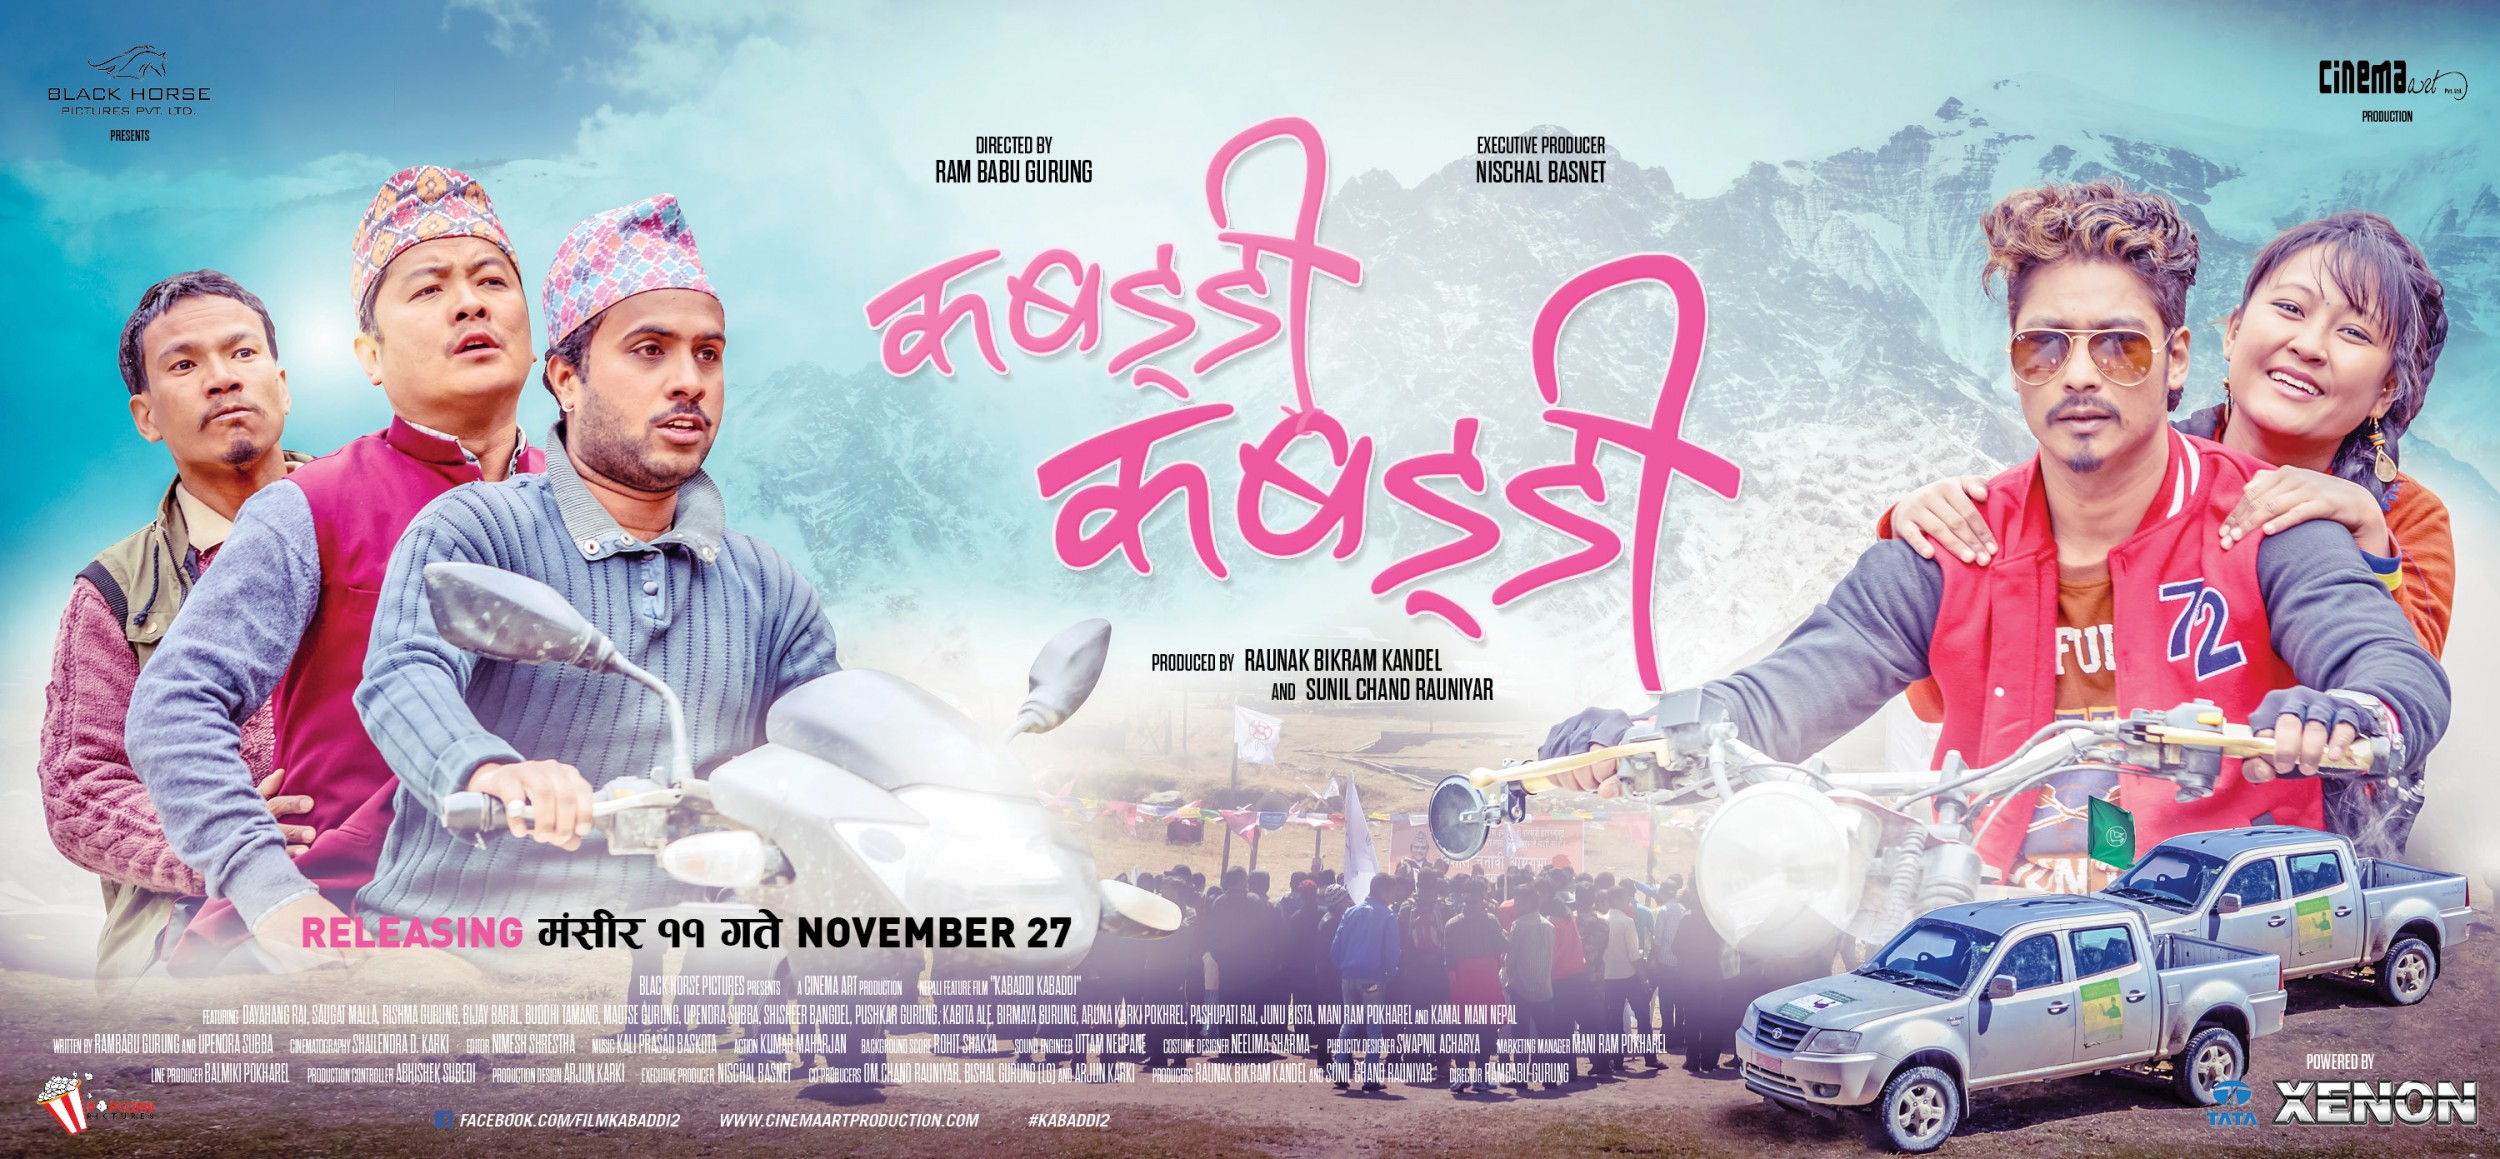 Mega Sized Movie Poster Image for Kabaddi Kabaddi (#1 of 5)